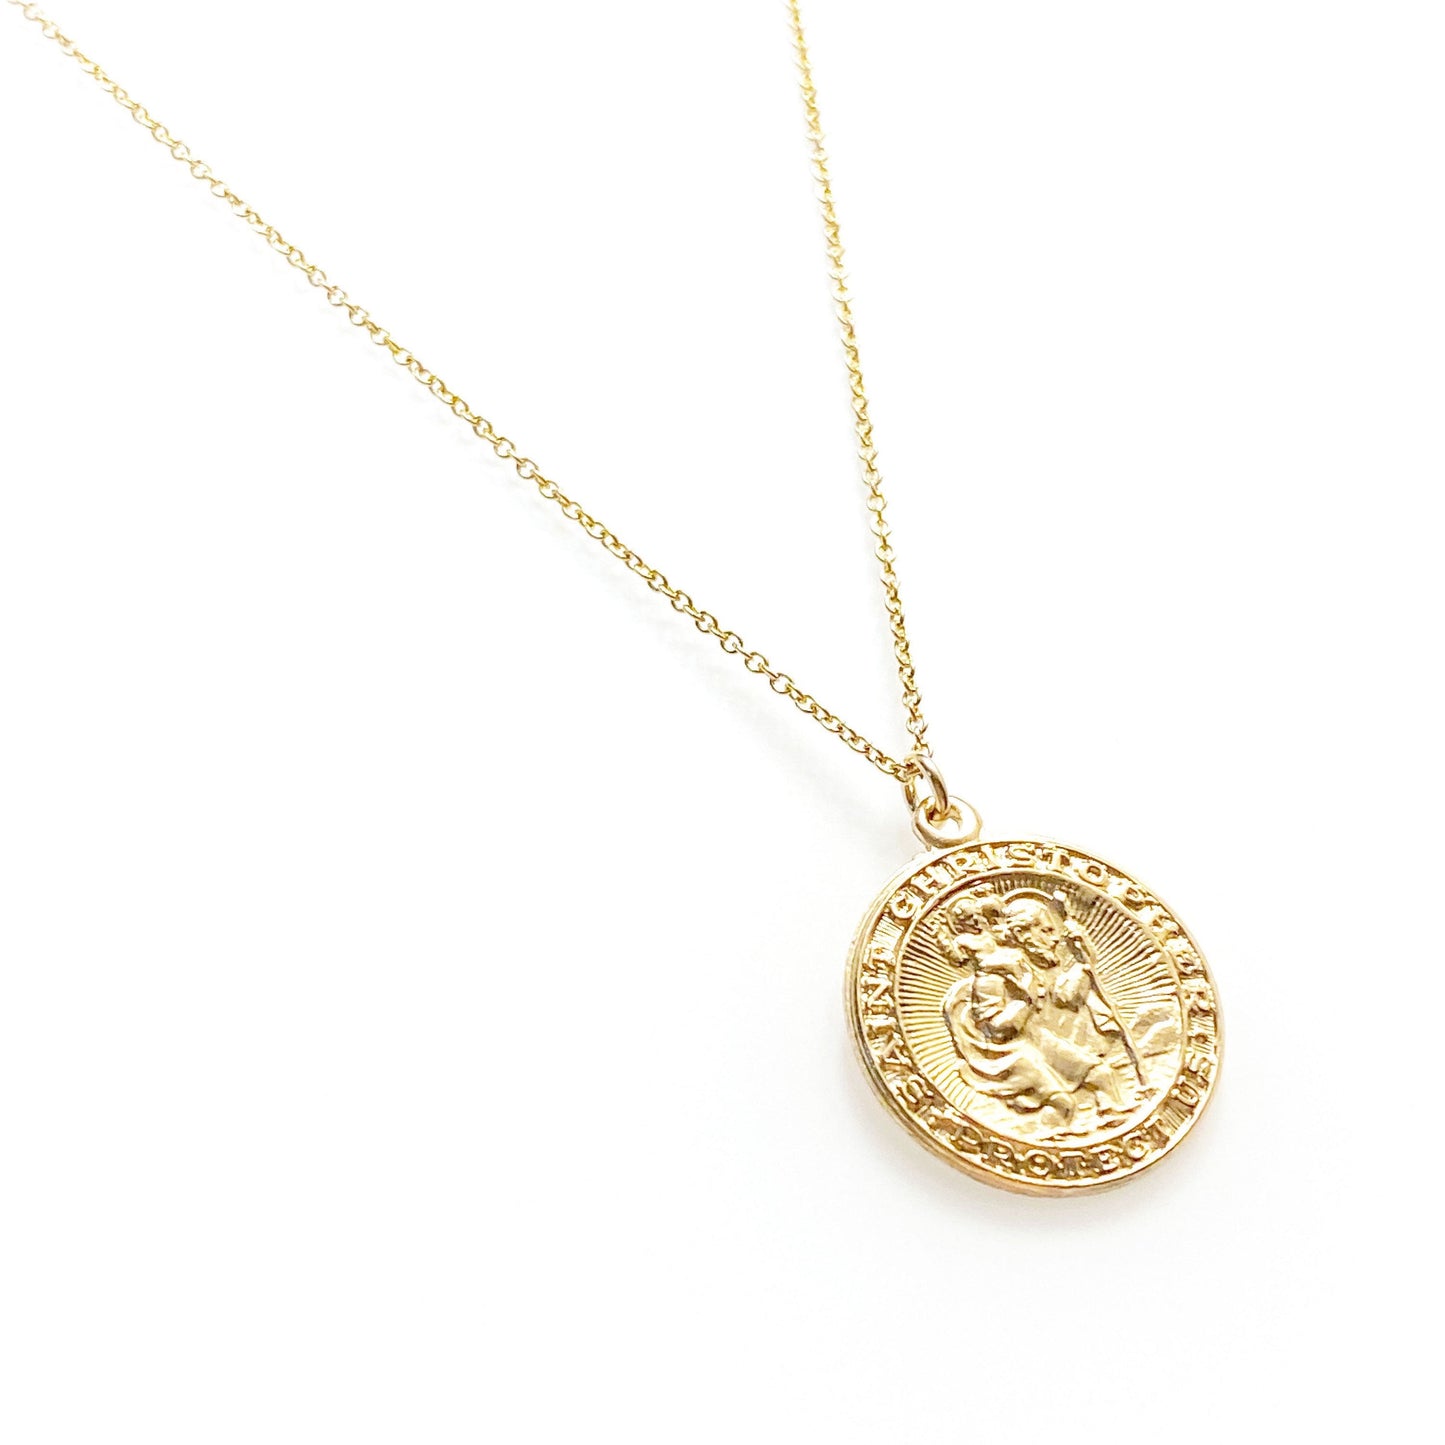 St Christopher medallion necklace - protector of journeys and travels (shower-safe, 14K gold-filled)